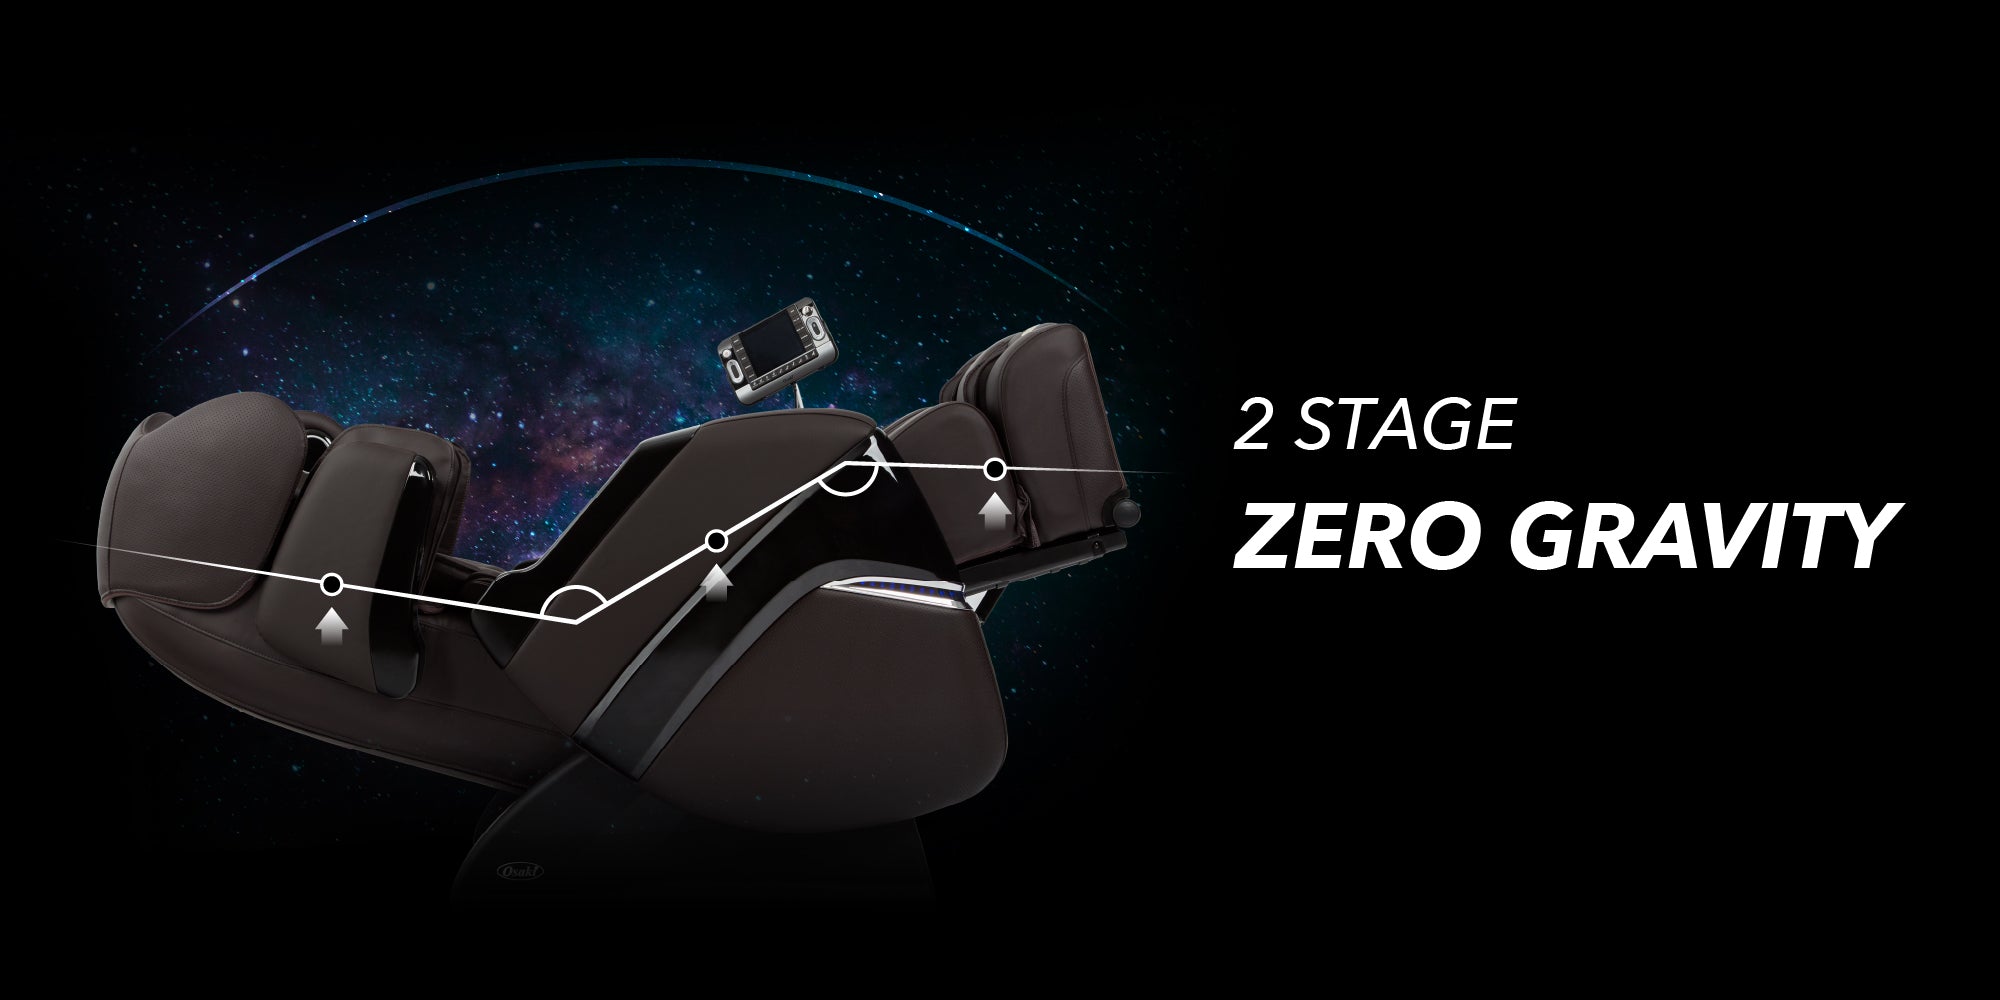 2 Stage Zero Gravity